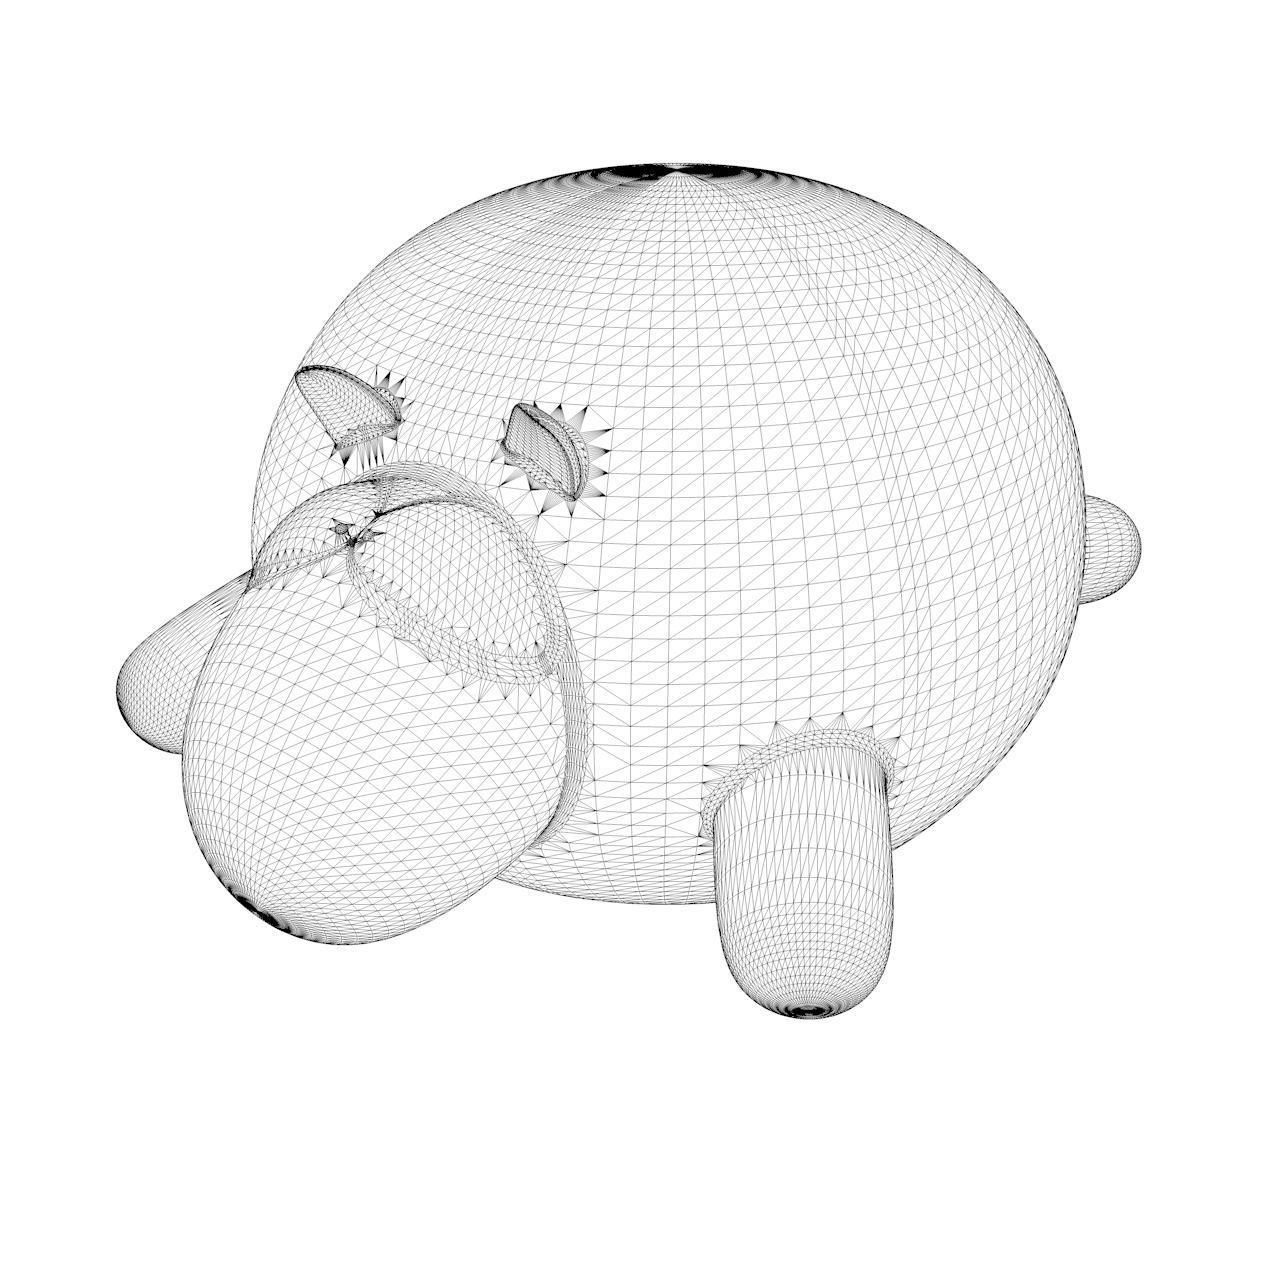 Lindo modelo de impresión en 3d de oveja inflable